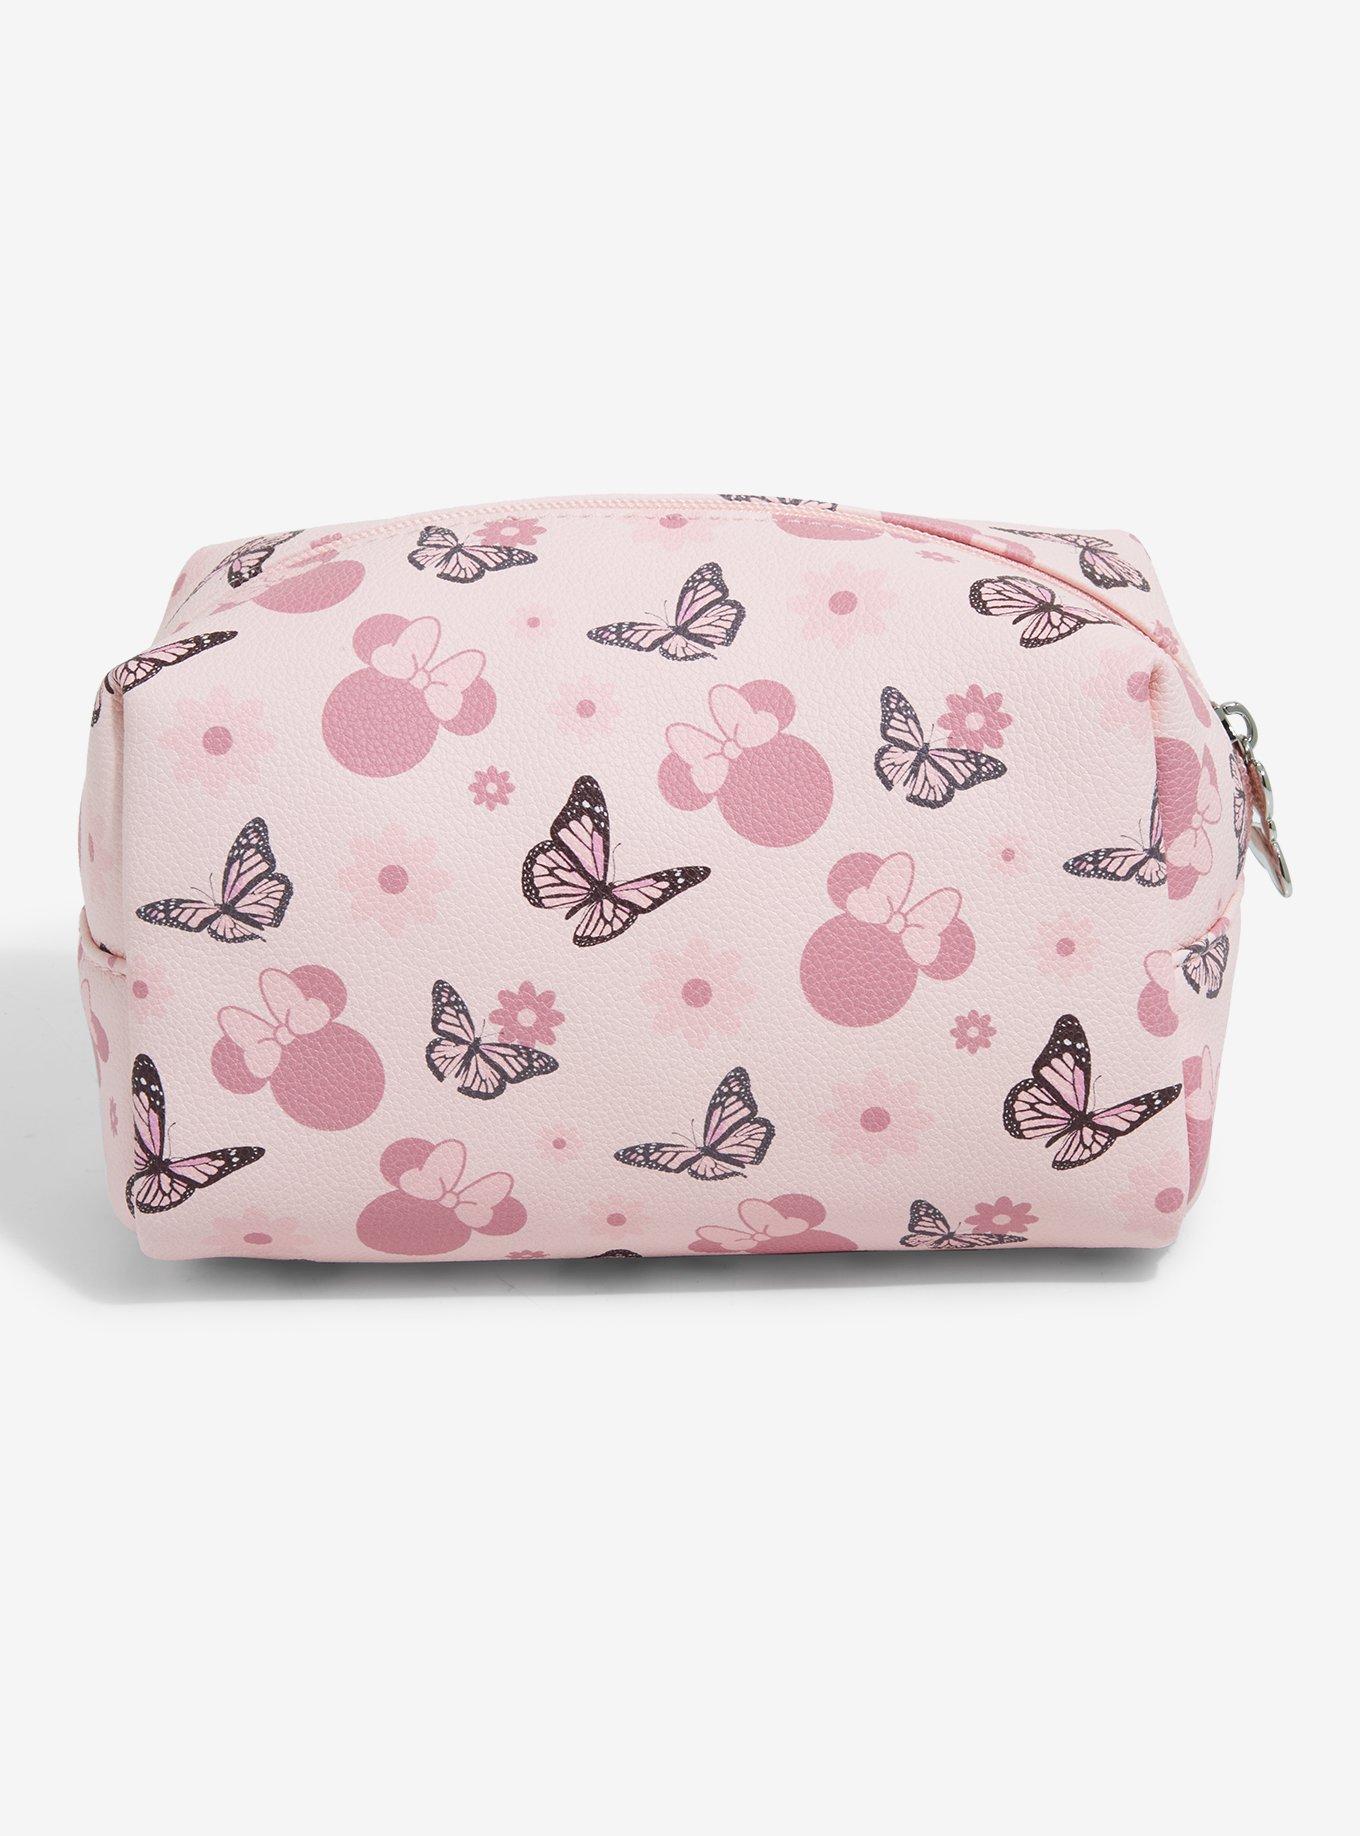 Disney Minnie Mouse & Butterflies Makeup Bag, , alternate